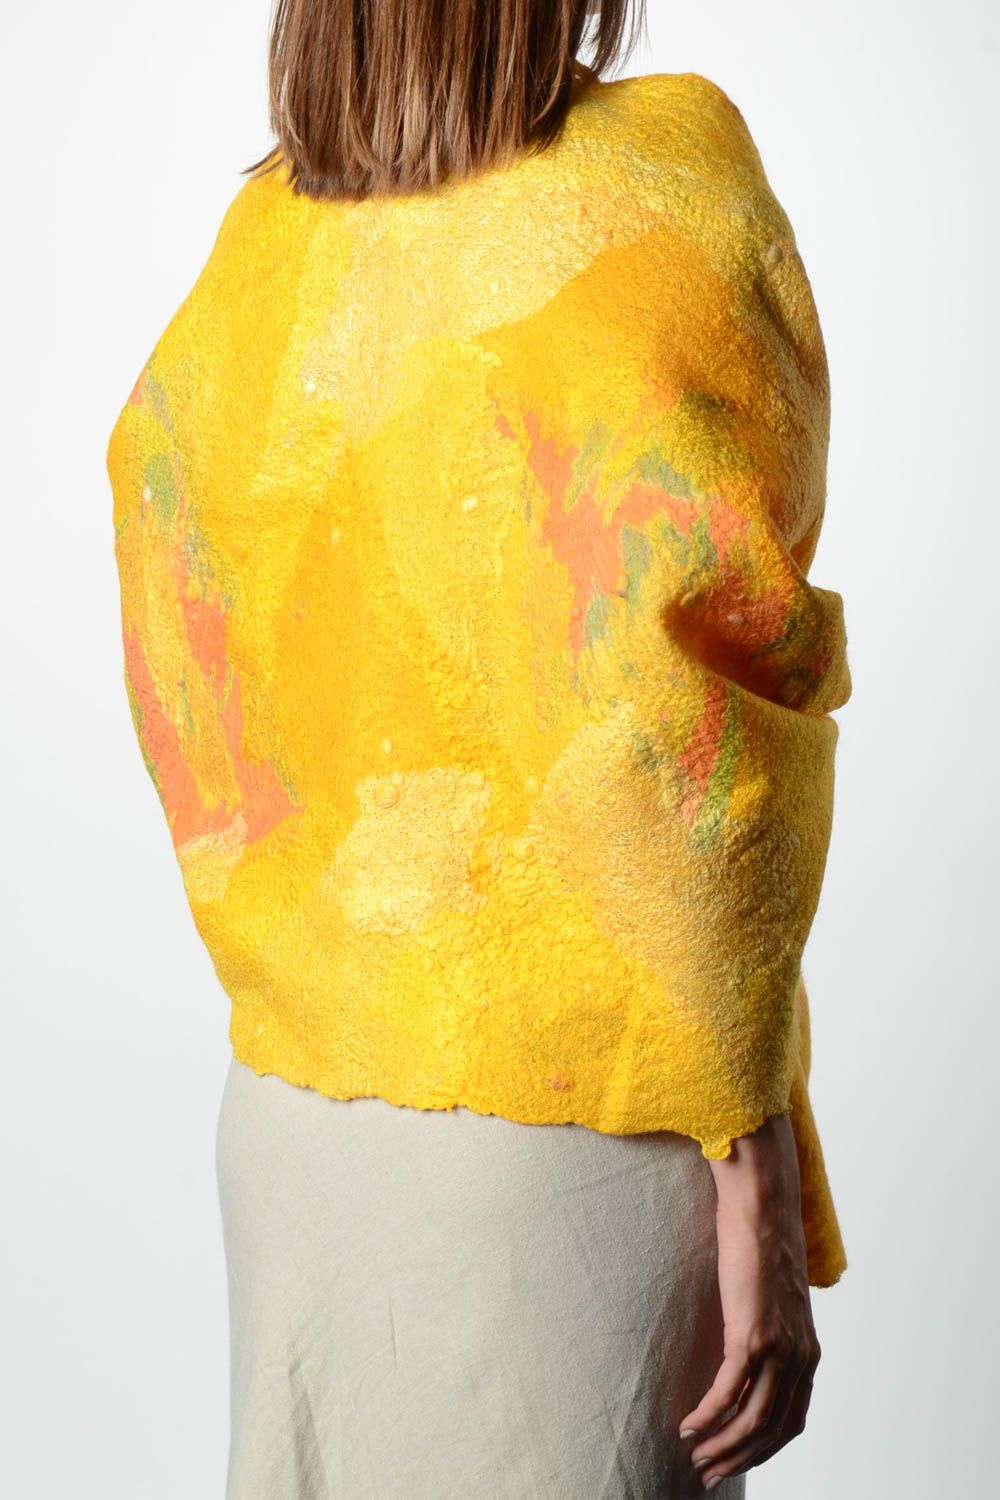 Женский шарф палантин ручной работы валяный палантин из шерсти желтый светлый фото 2